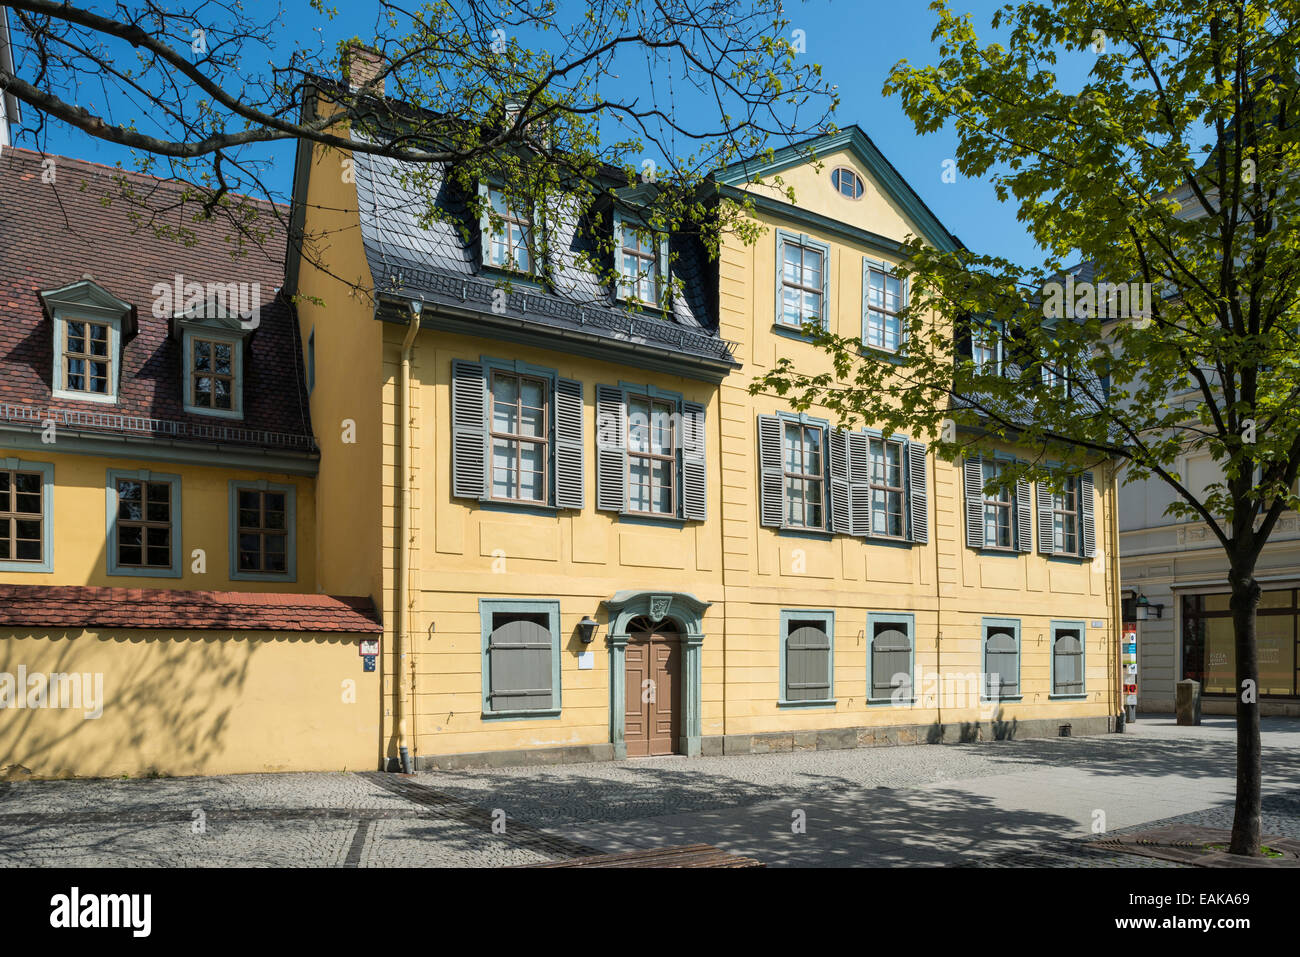 Maison de Friedrich Schiller, Weimar, Thuringe, Allemagne Banque D'Images